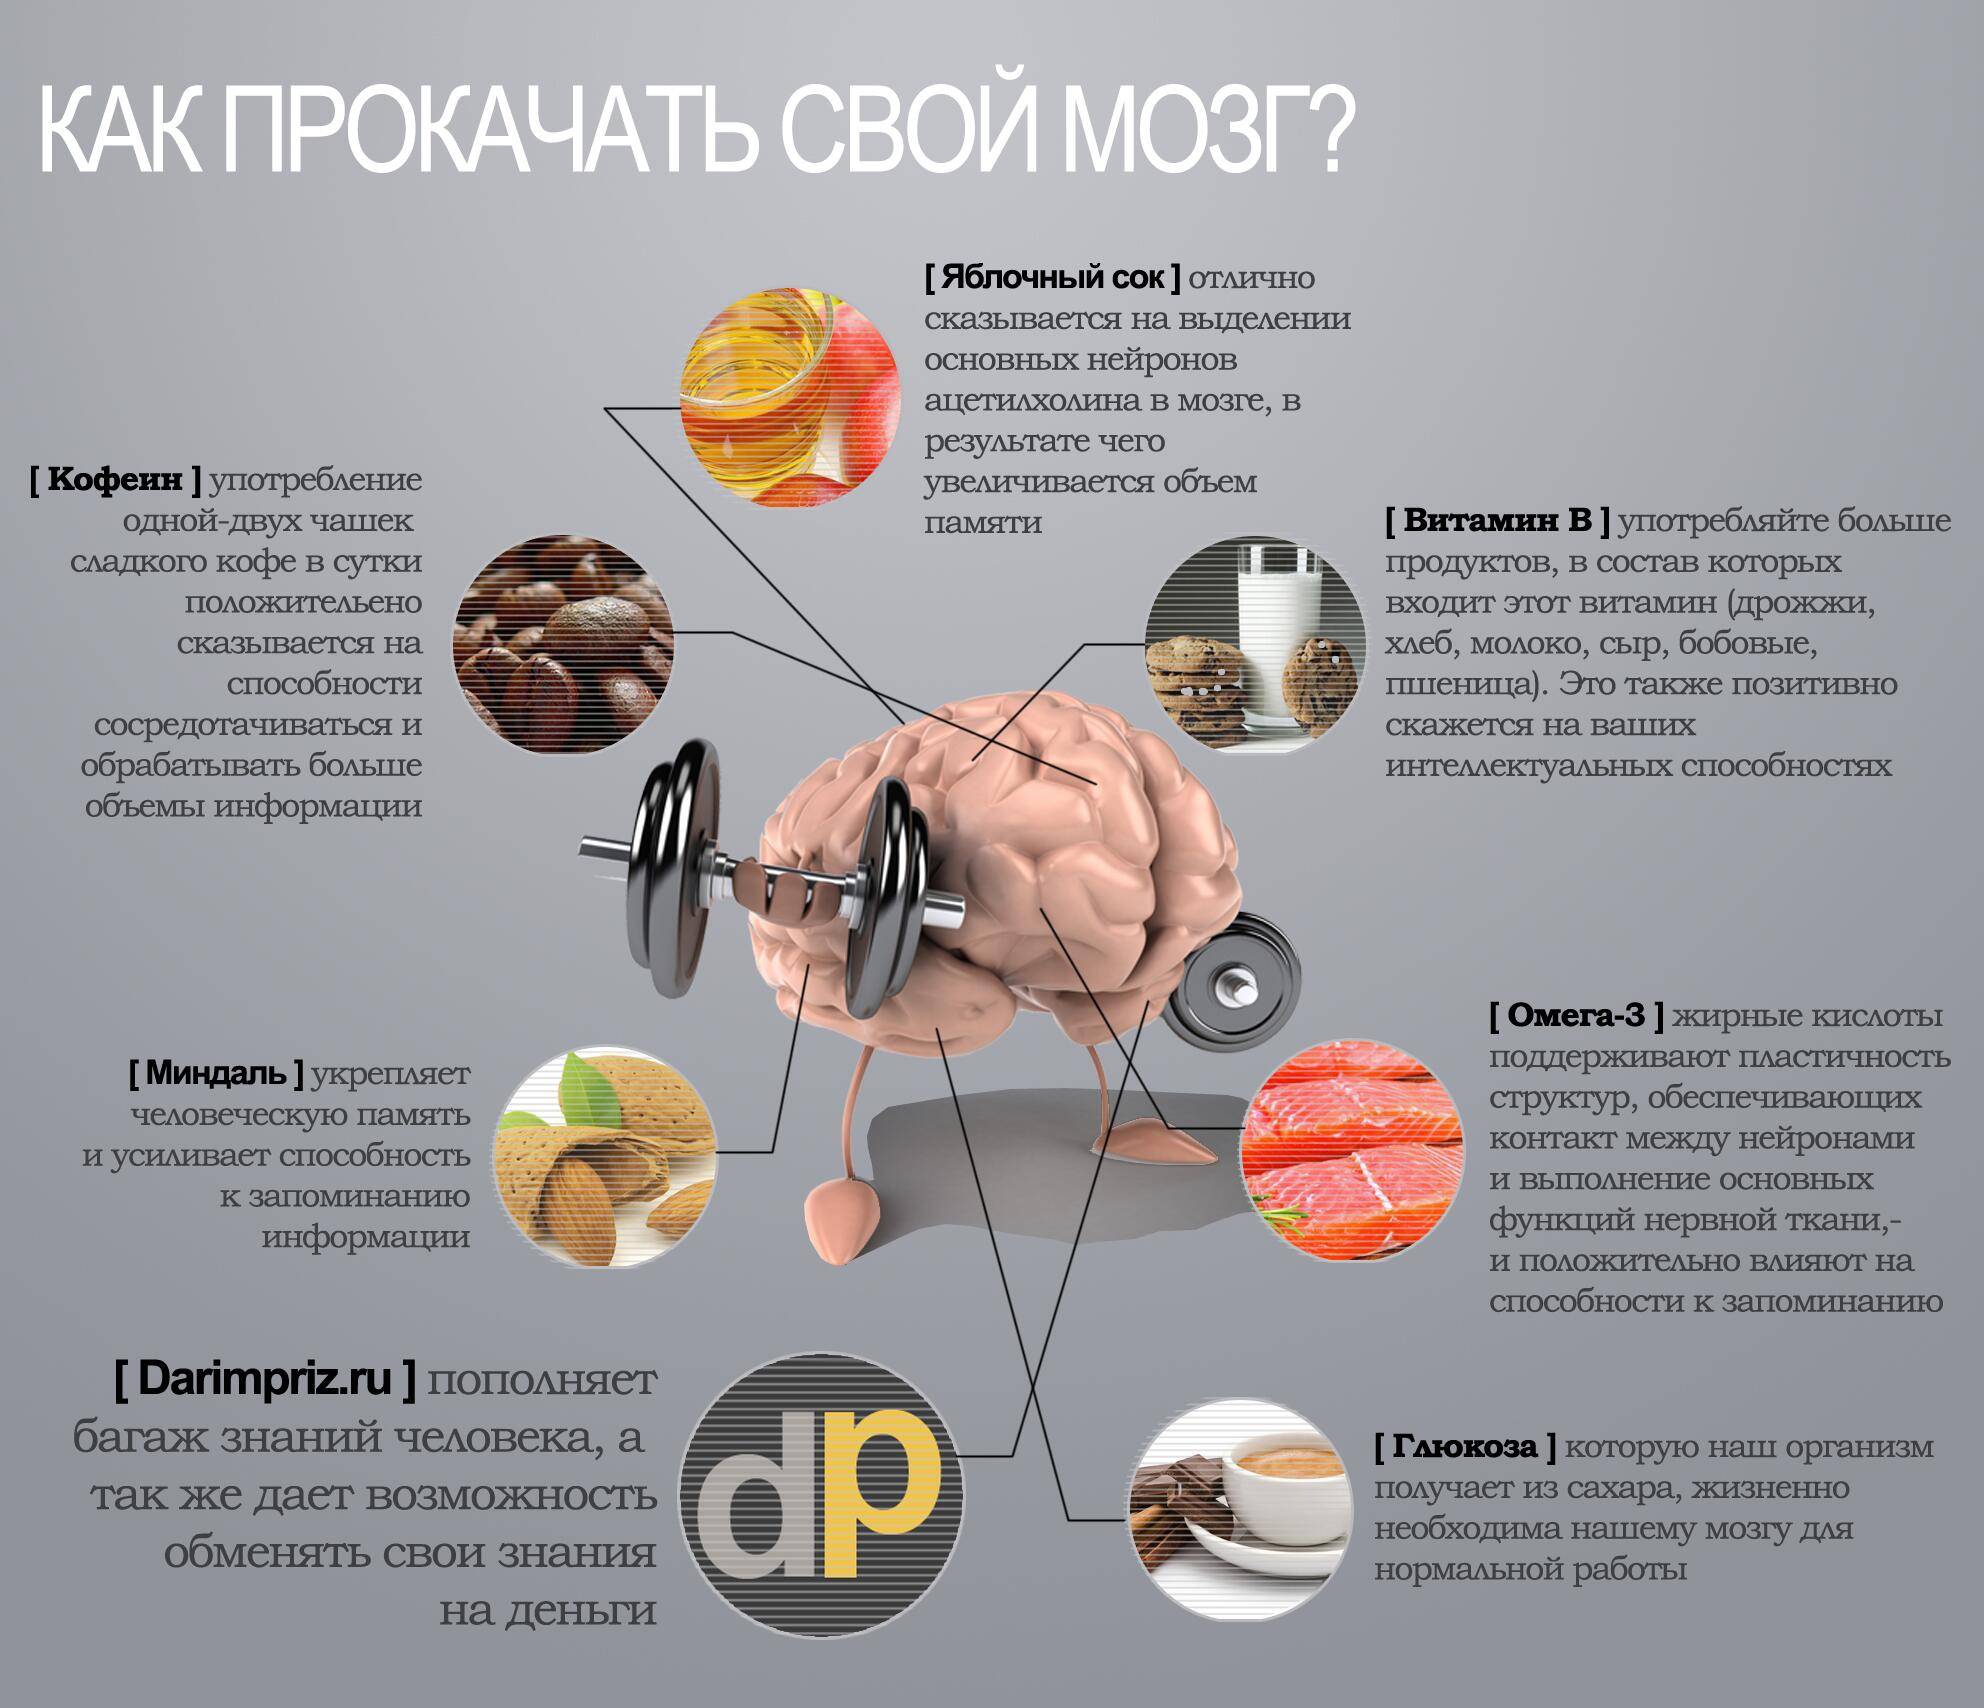 Самые полезные продукты для мозга! еда, улучшающая память!